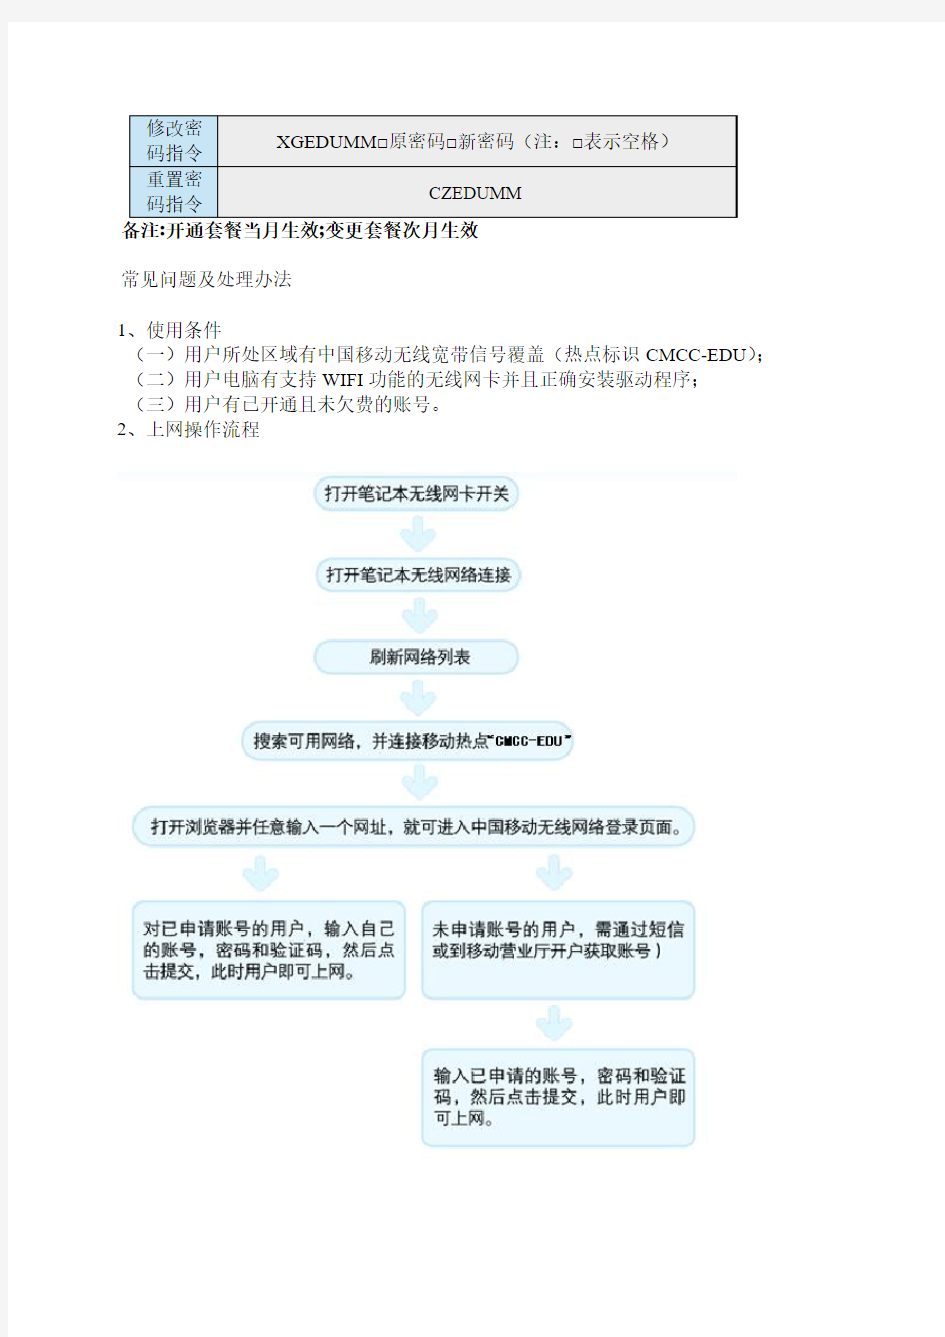 中国移动无线宽带(业务介绍、套餐资费、办理、常见问题及处理方法)